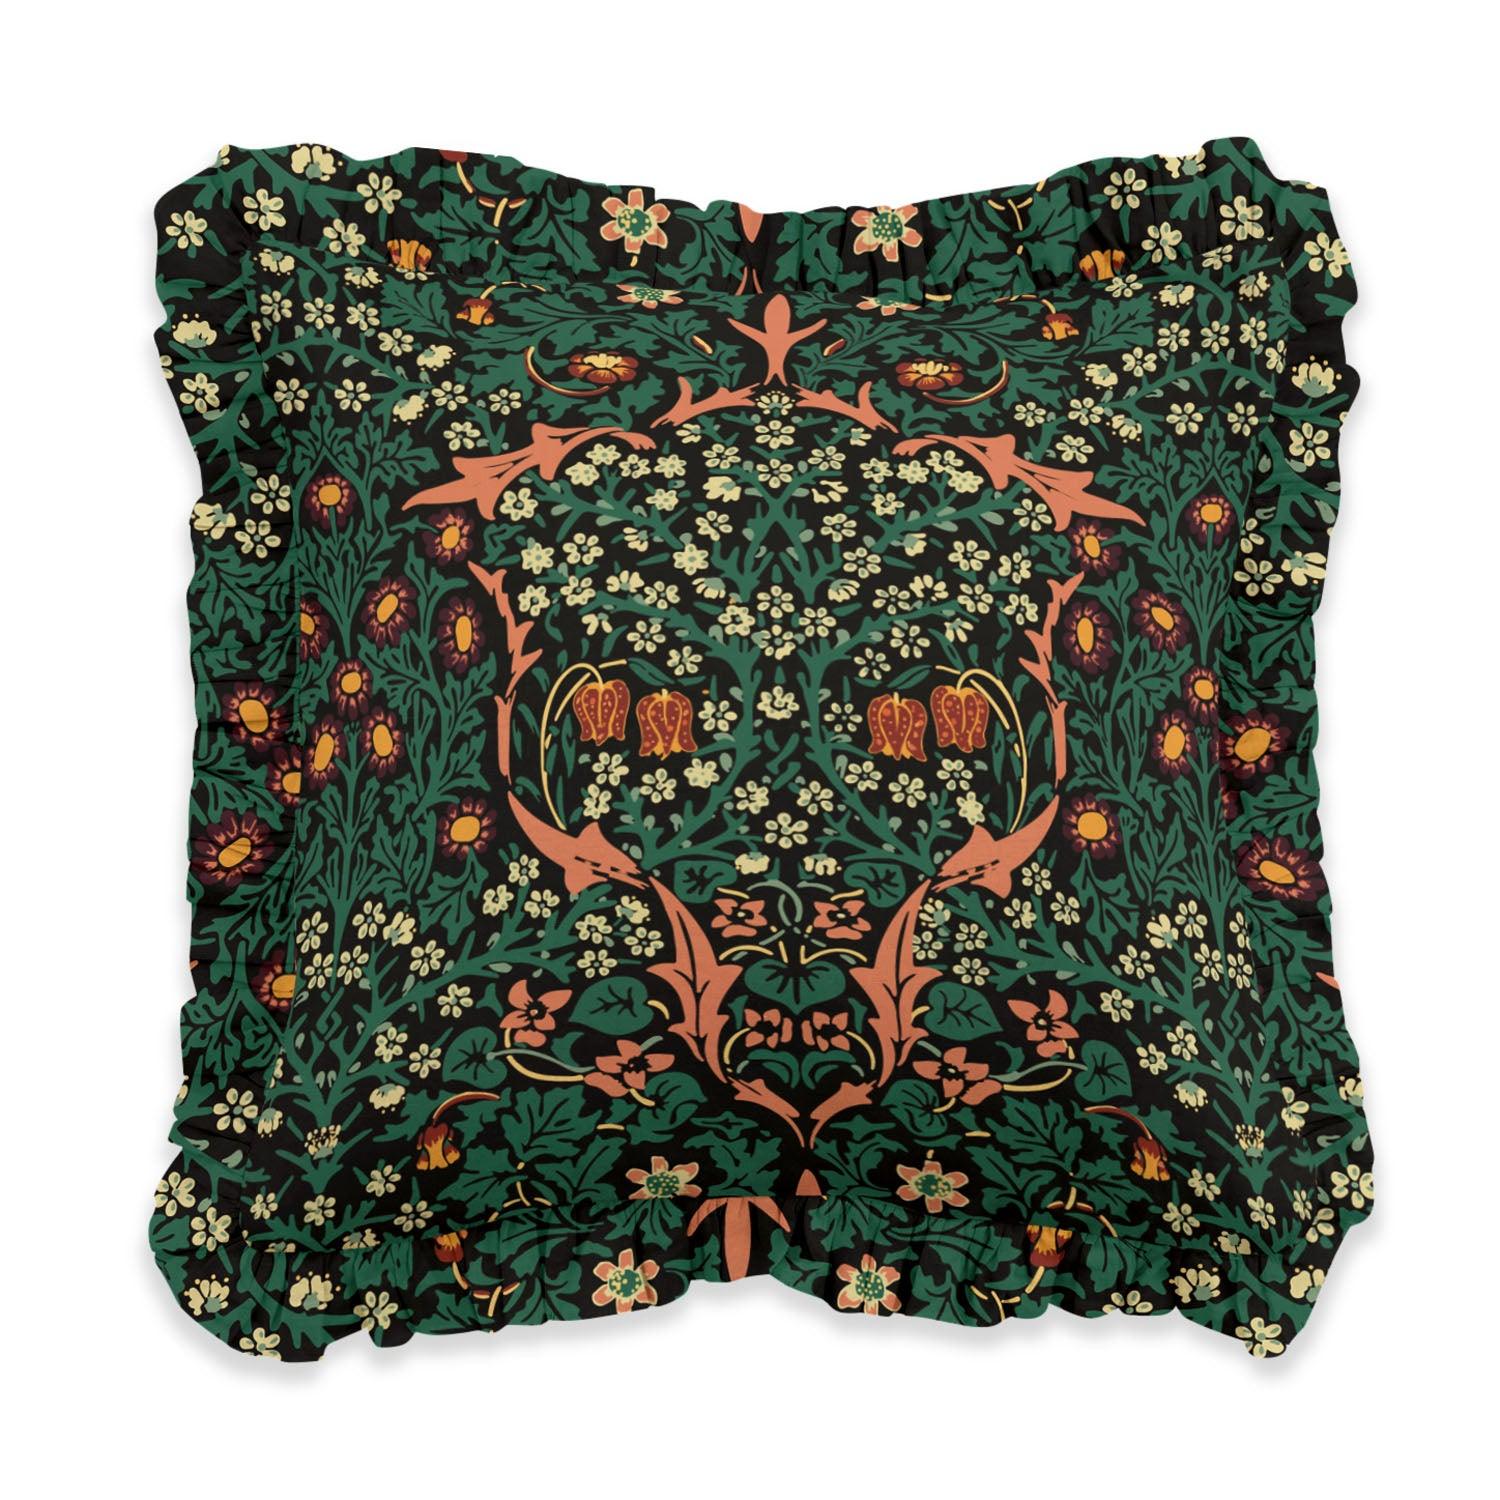 Blackthorn Green - Ruffle William Morris Cushion